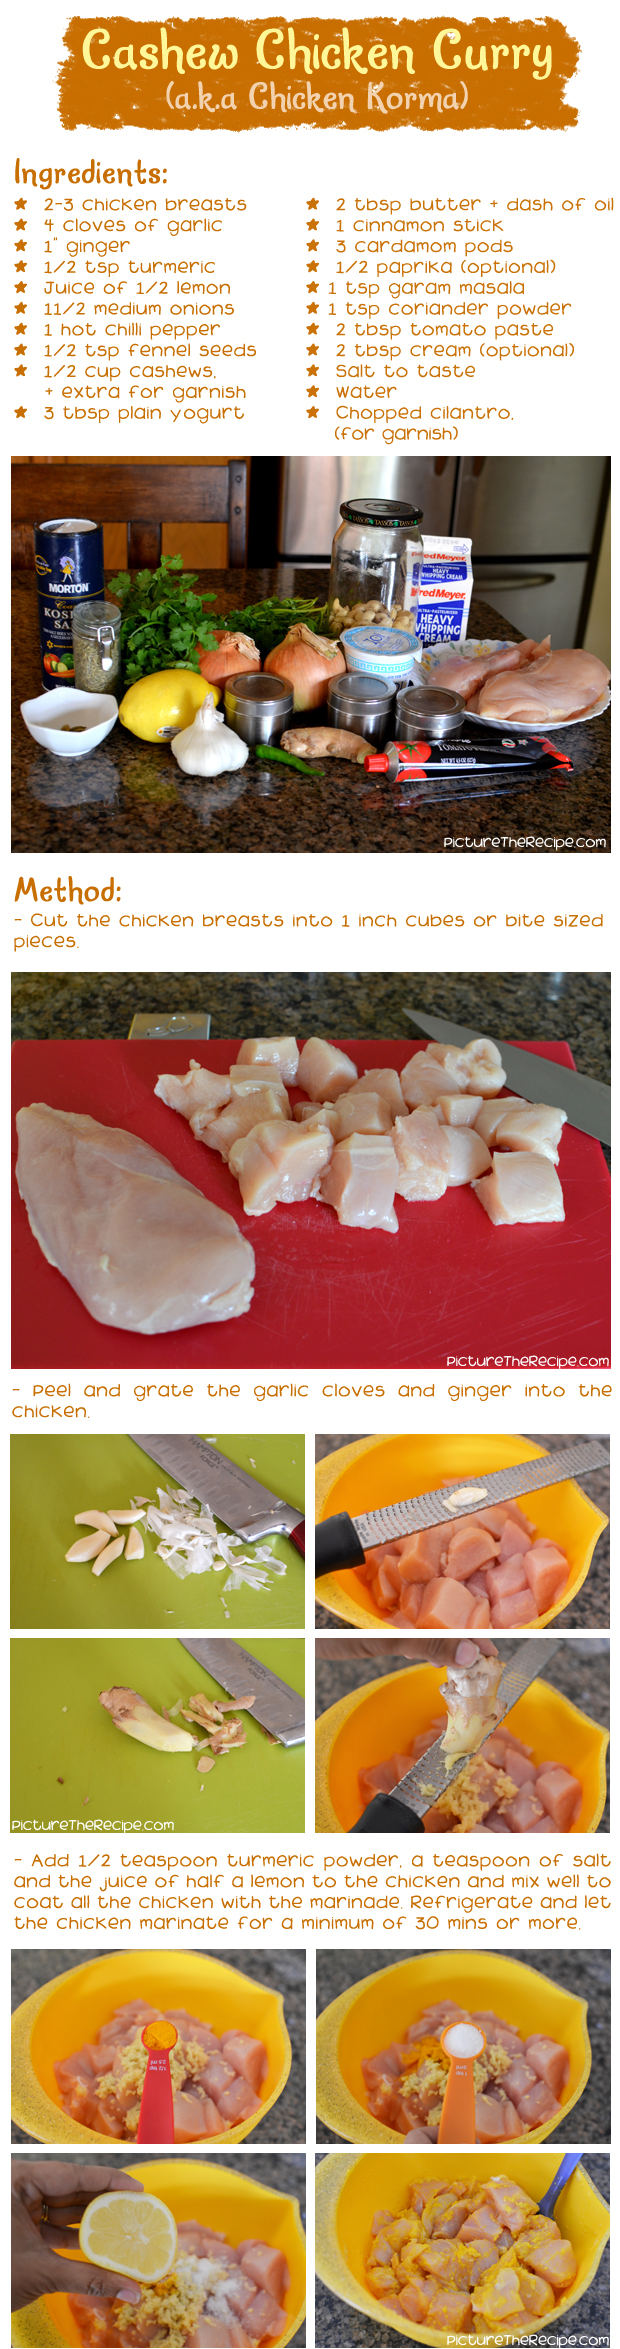 Cashew Chicken Curry Recipe - Part 1